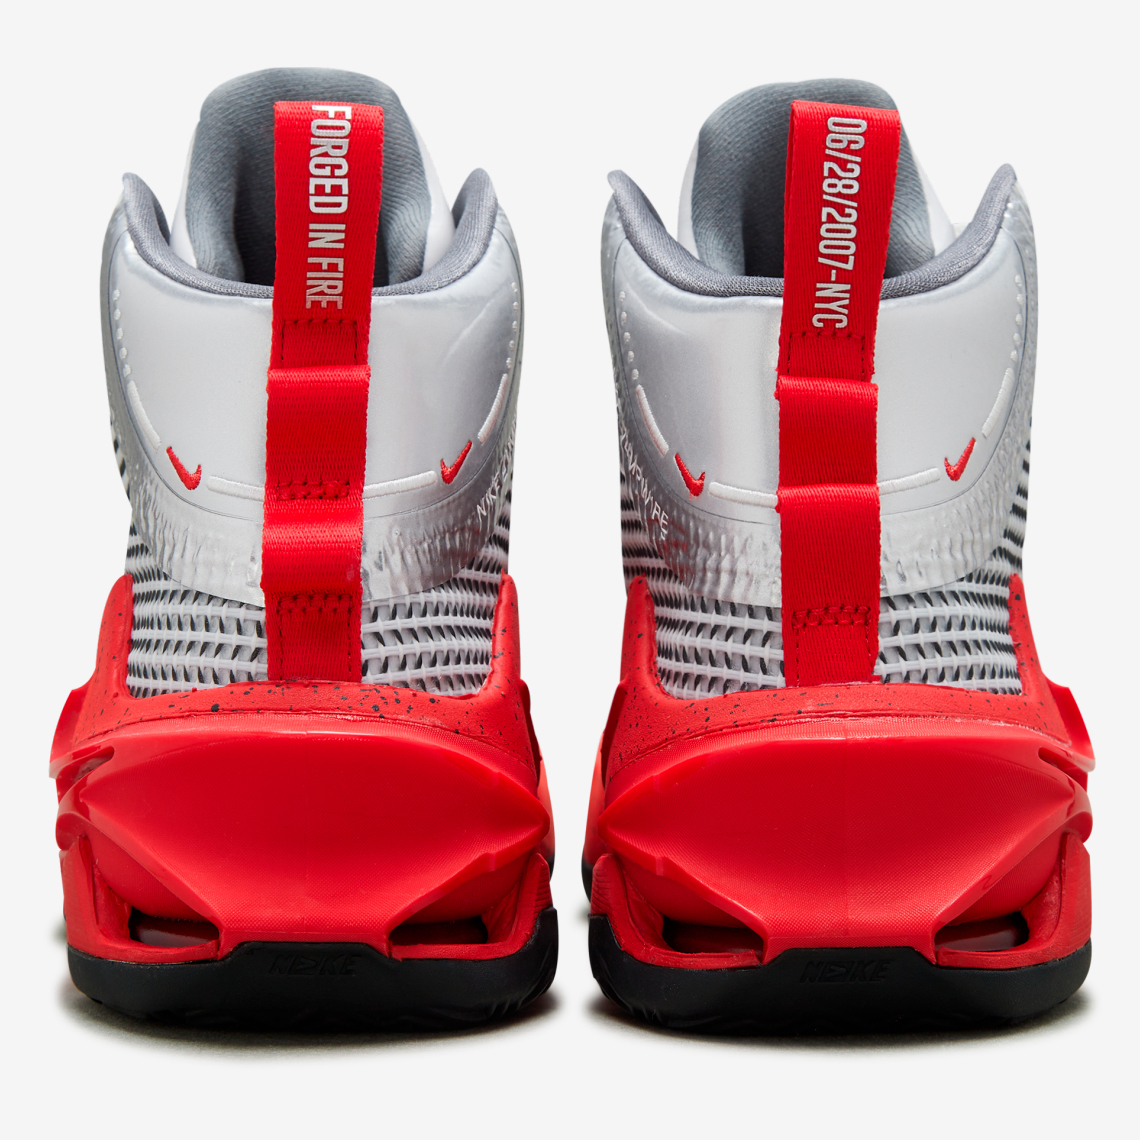 Yi Jianlian's Nike Zoom G.T. Jump Is Forged in Fire - Sneaker News